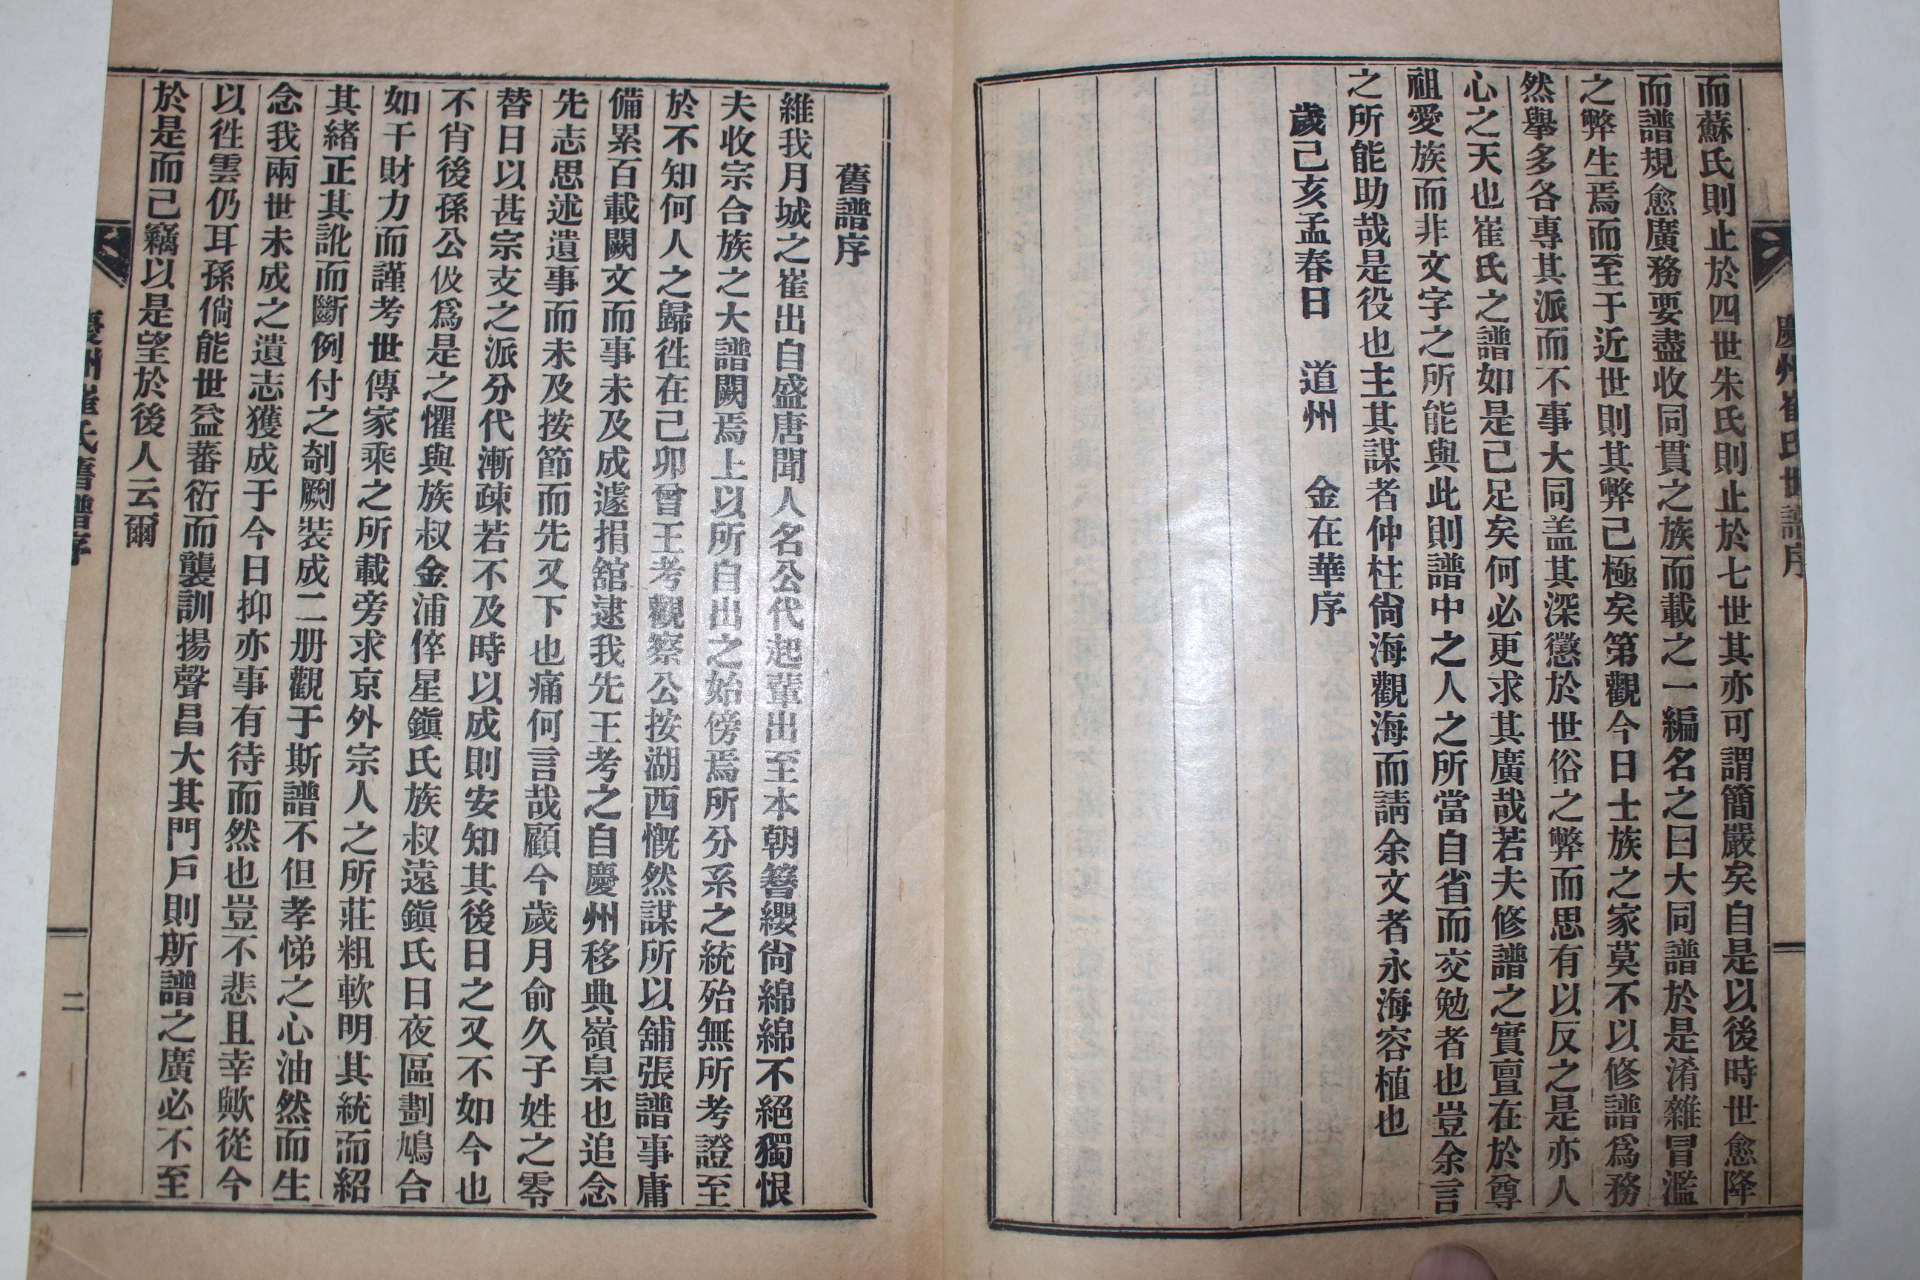 1959년(己亥年) 신연활자본 경주최씨세보(慶州崔氏世譜) 11책